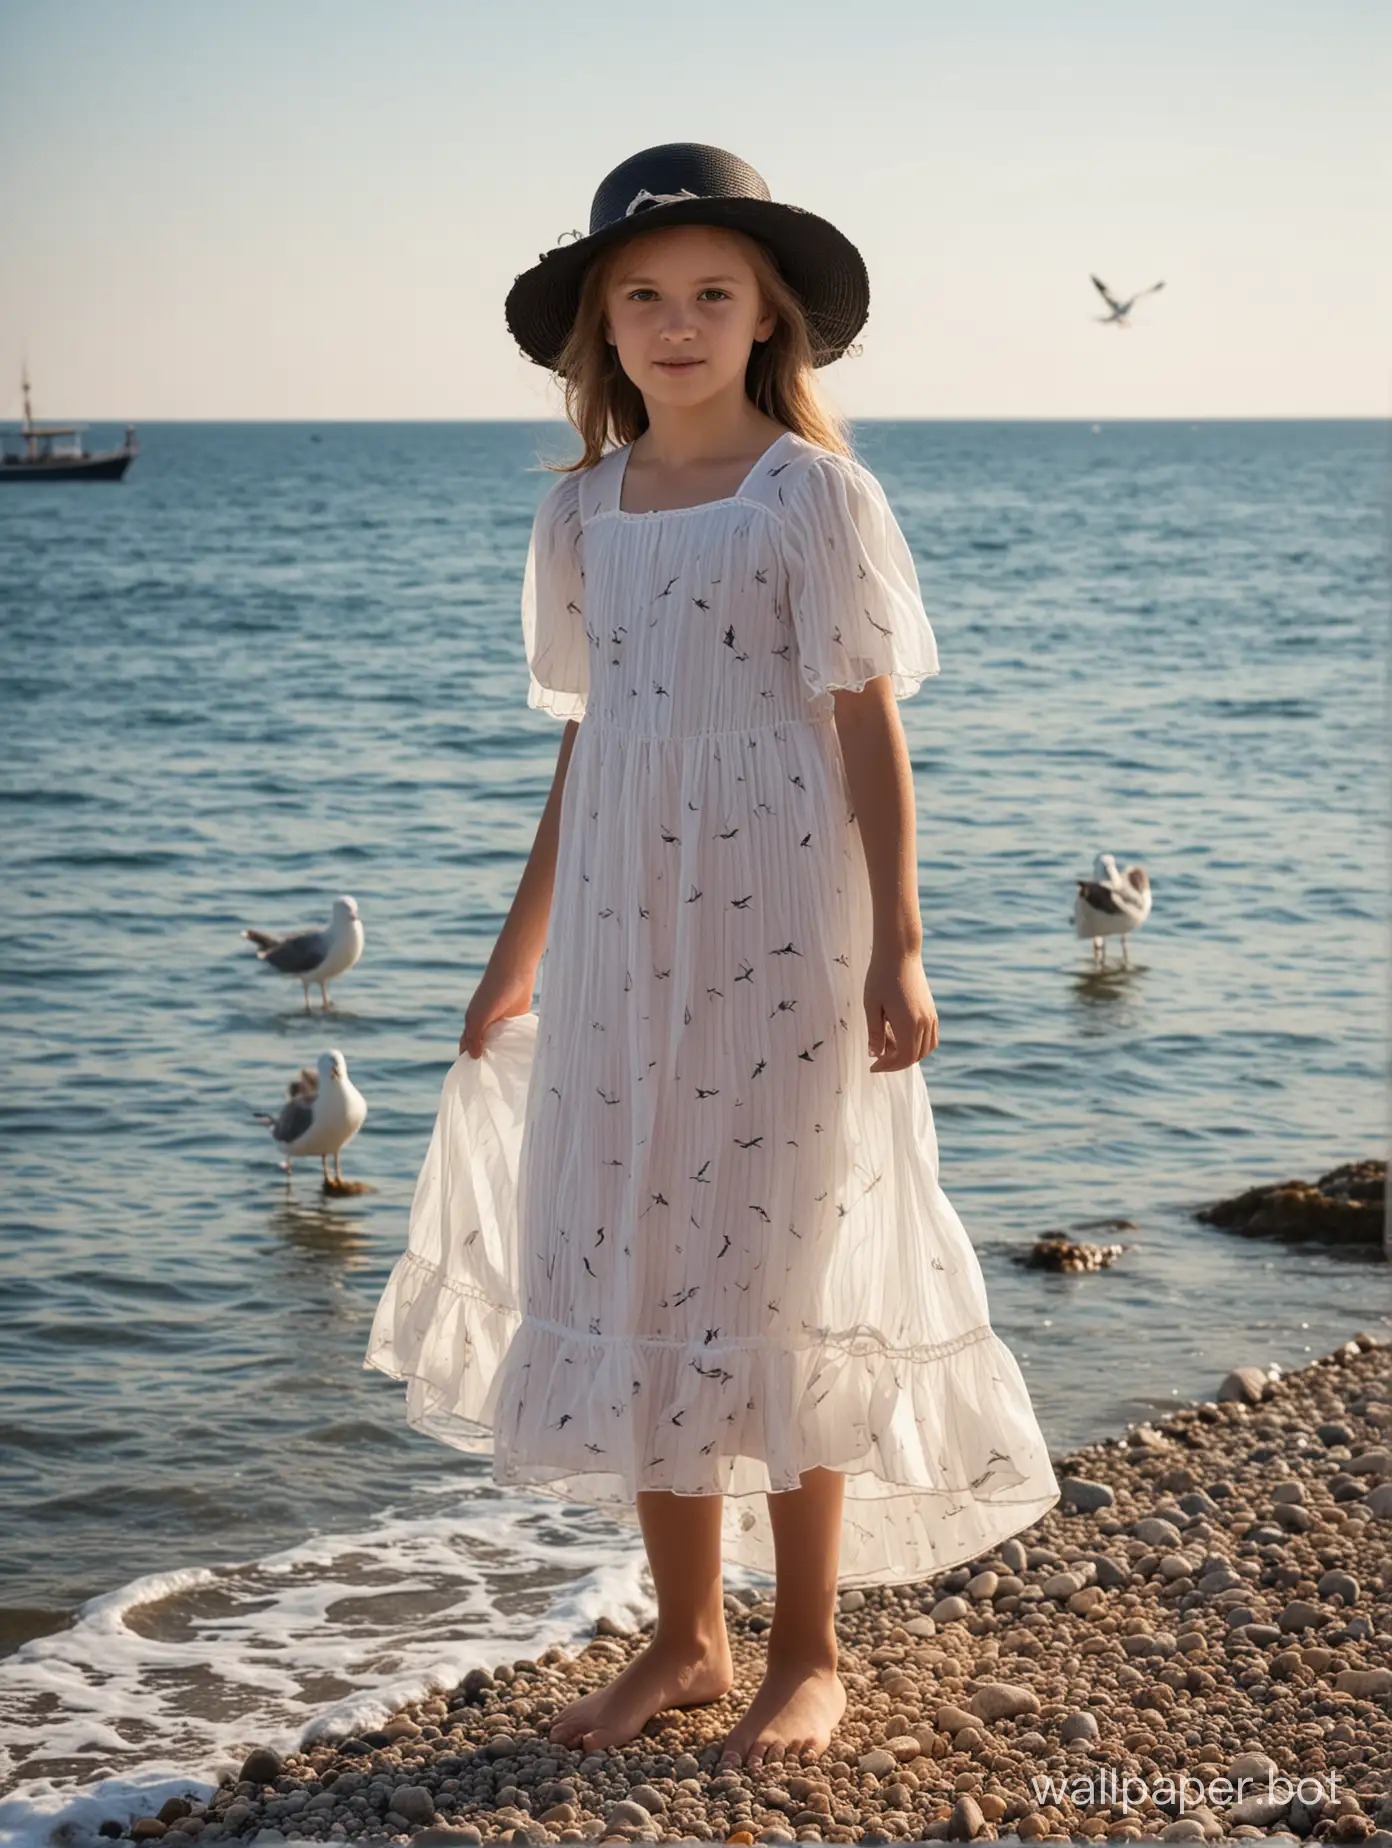 чёрное море, Крым, девочка 11 лет в летнем платье и шляпке, в полный рост, теплоход вдалеке, чайка, прозрачное платье